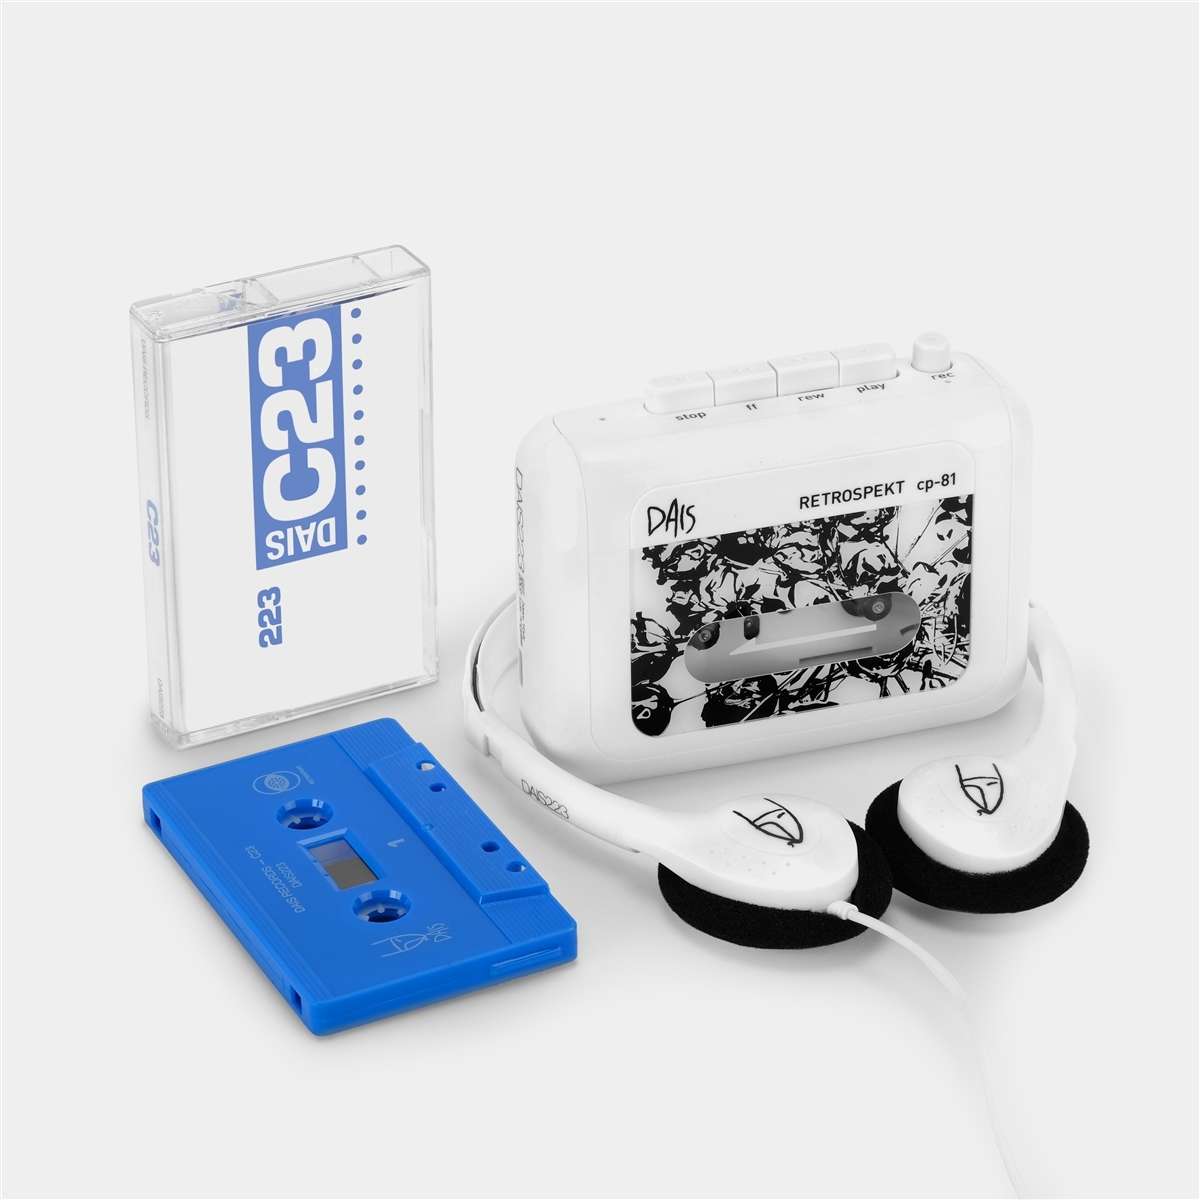 Retrospekt - CP 81 Portable Cassette Player & C23 Compilation - 33RPM